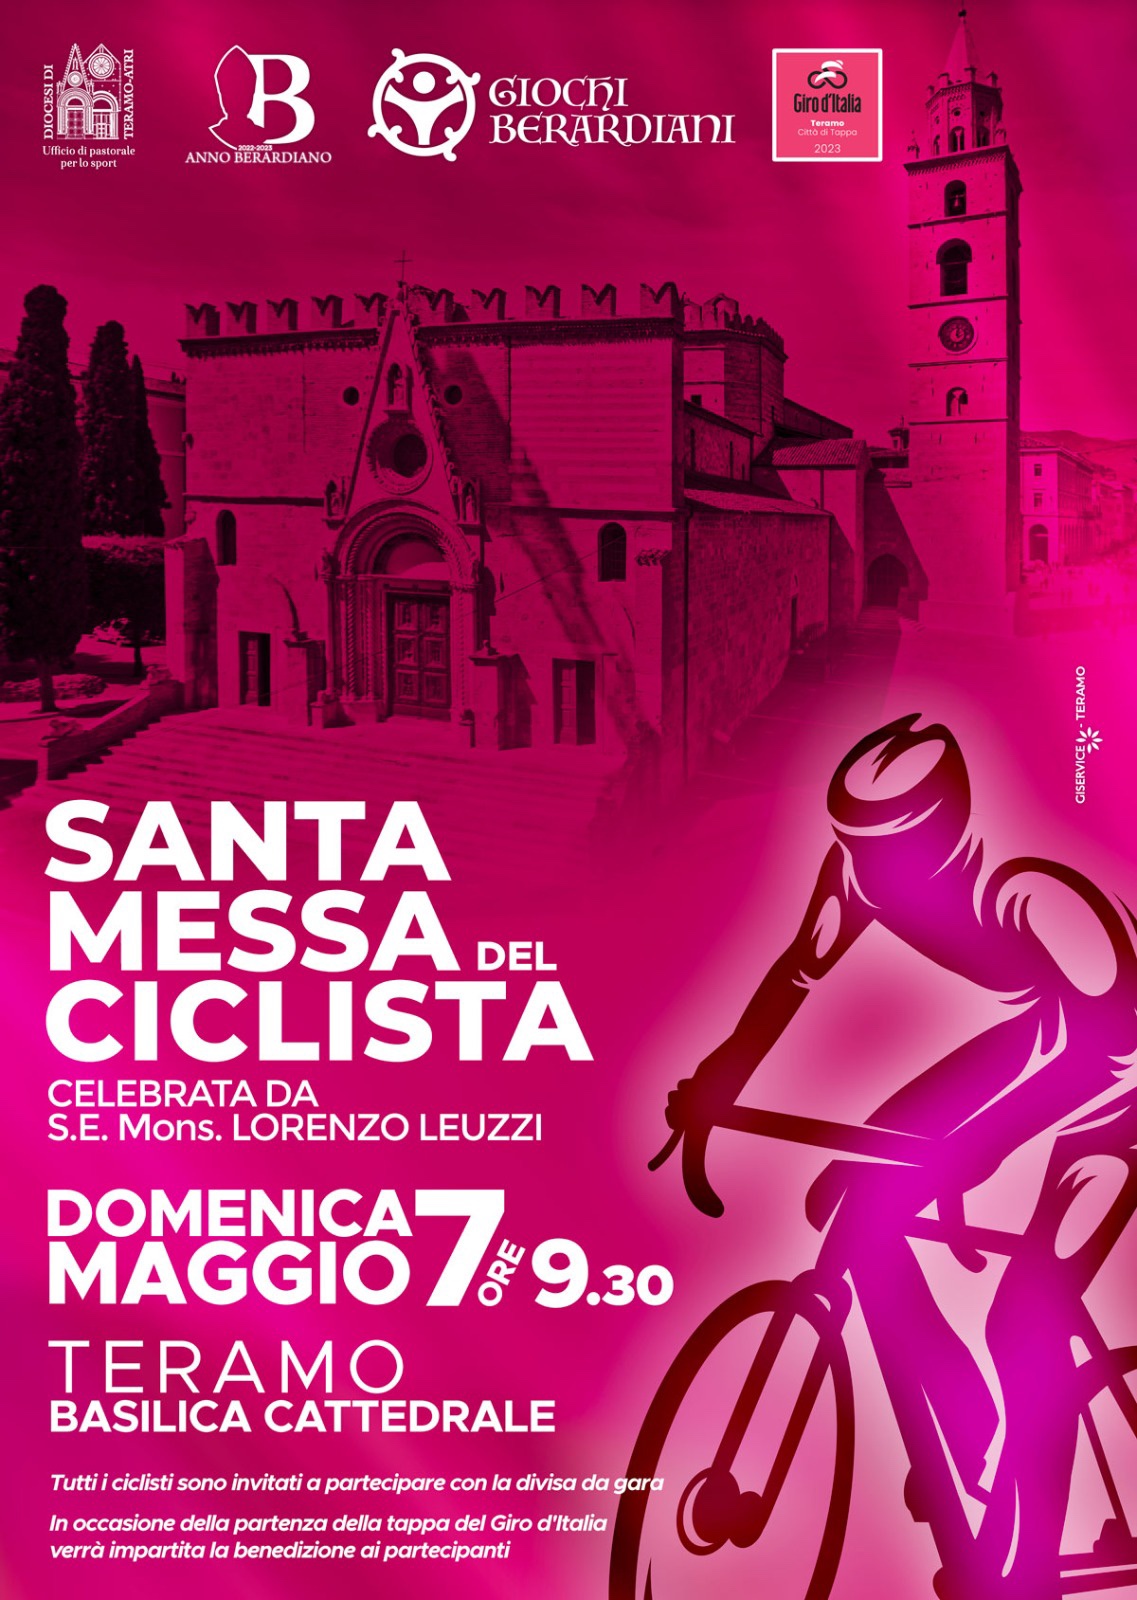 Teramo-L’Anno Berardiano della Diocesi si tinge di rosa in attesa del Giro d’Italia